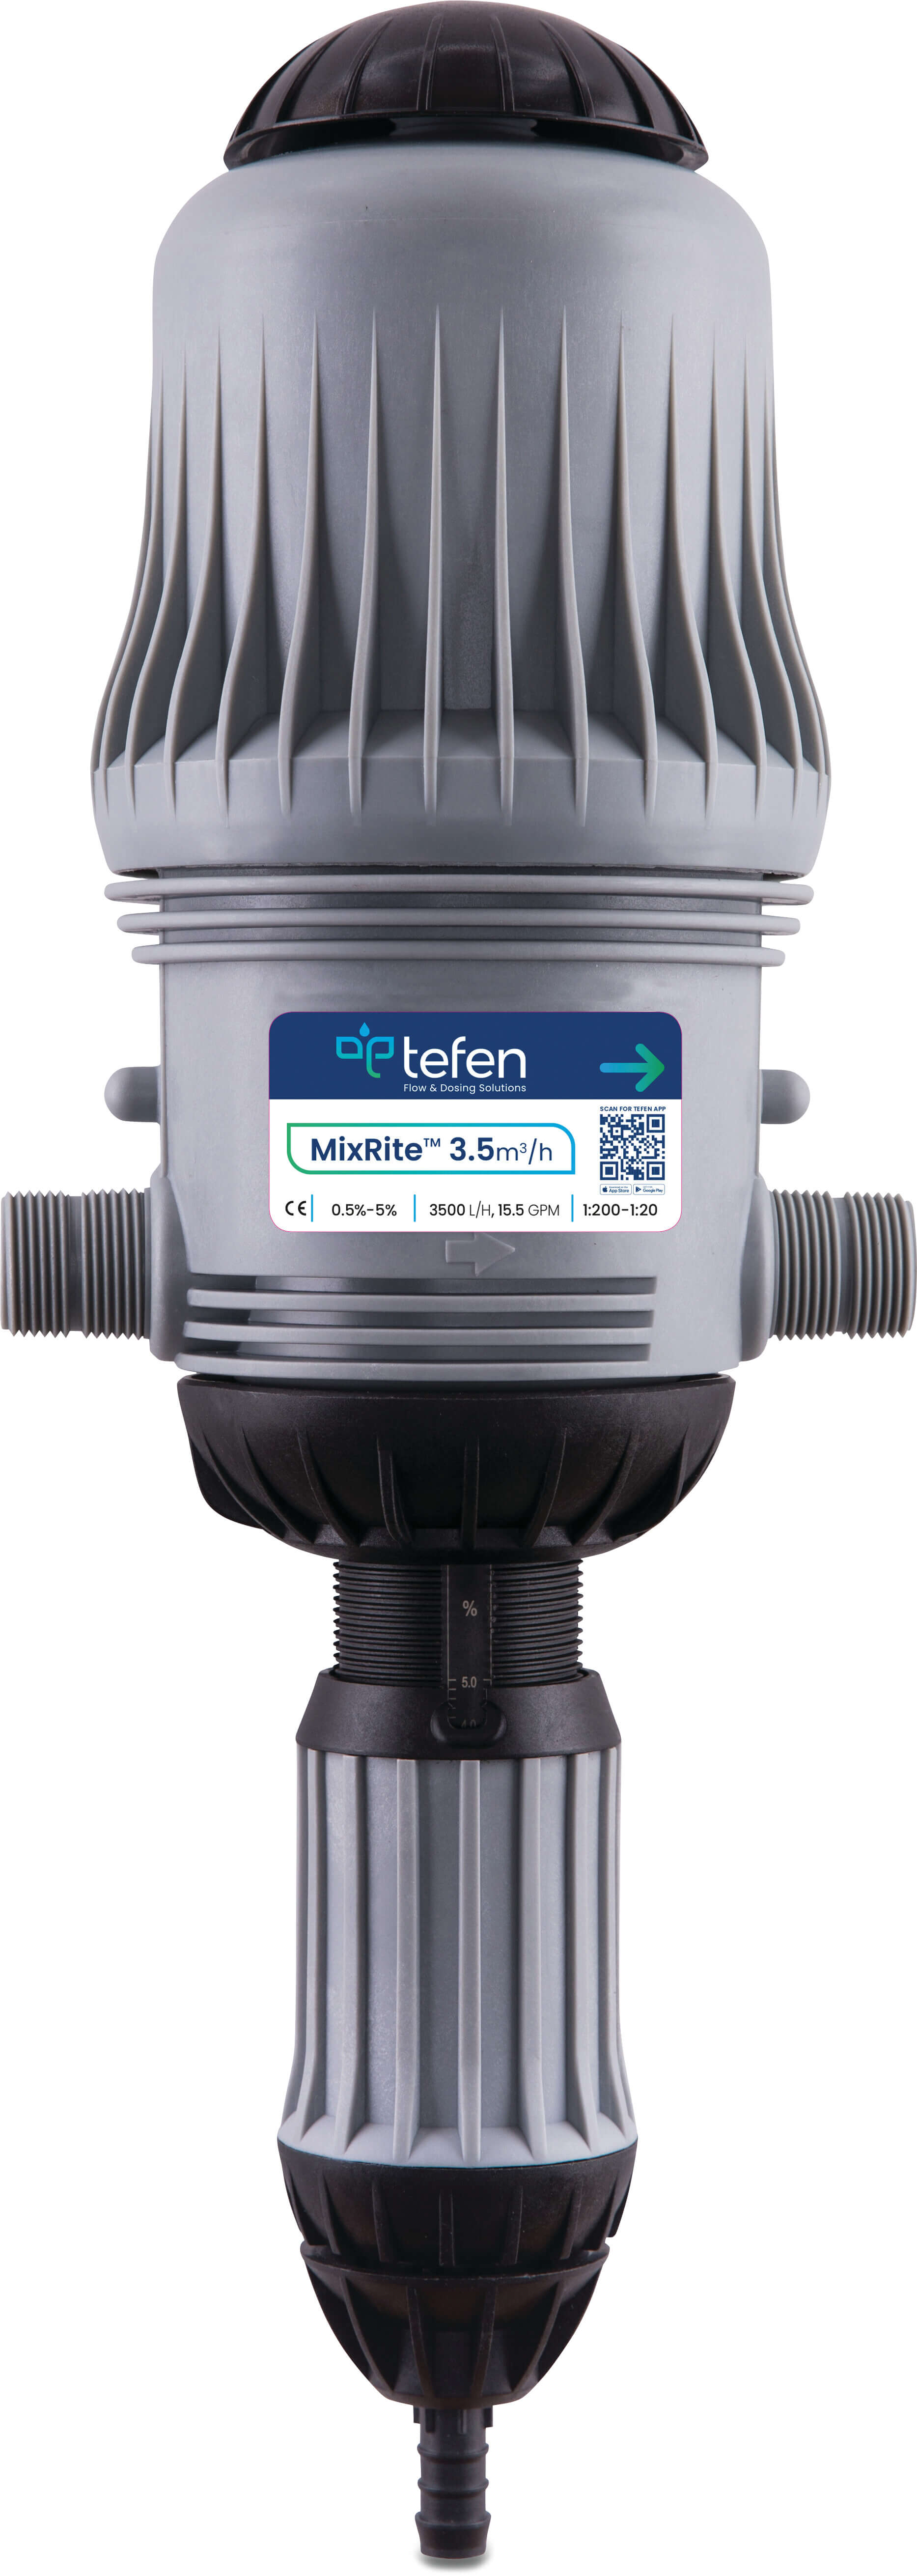 Tefen Pompa dozująca 3/4" GZ x podłączenie węża x GZ 0.2 - 8bar type MixRite TF 3.5 0.3% - 2%